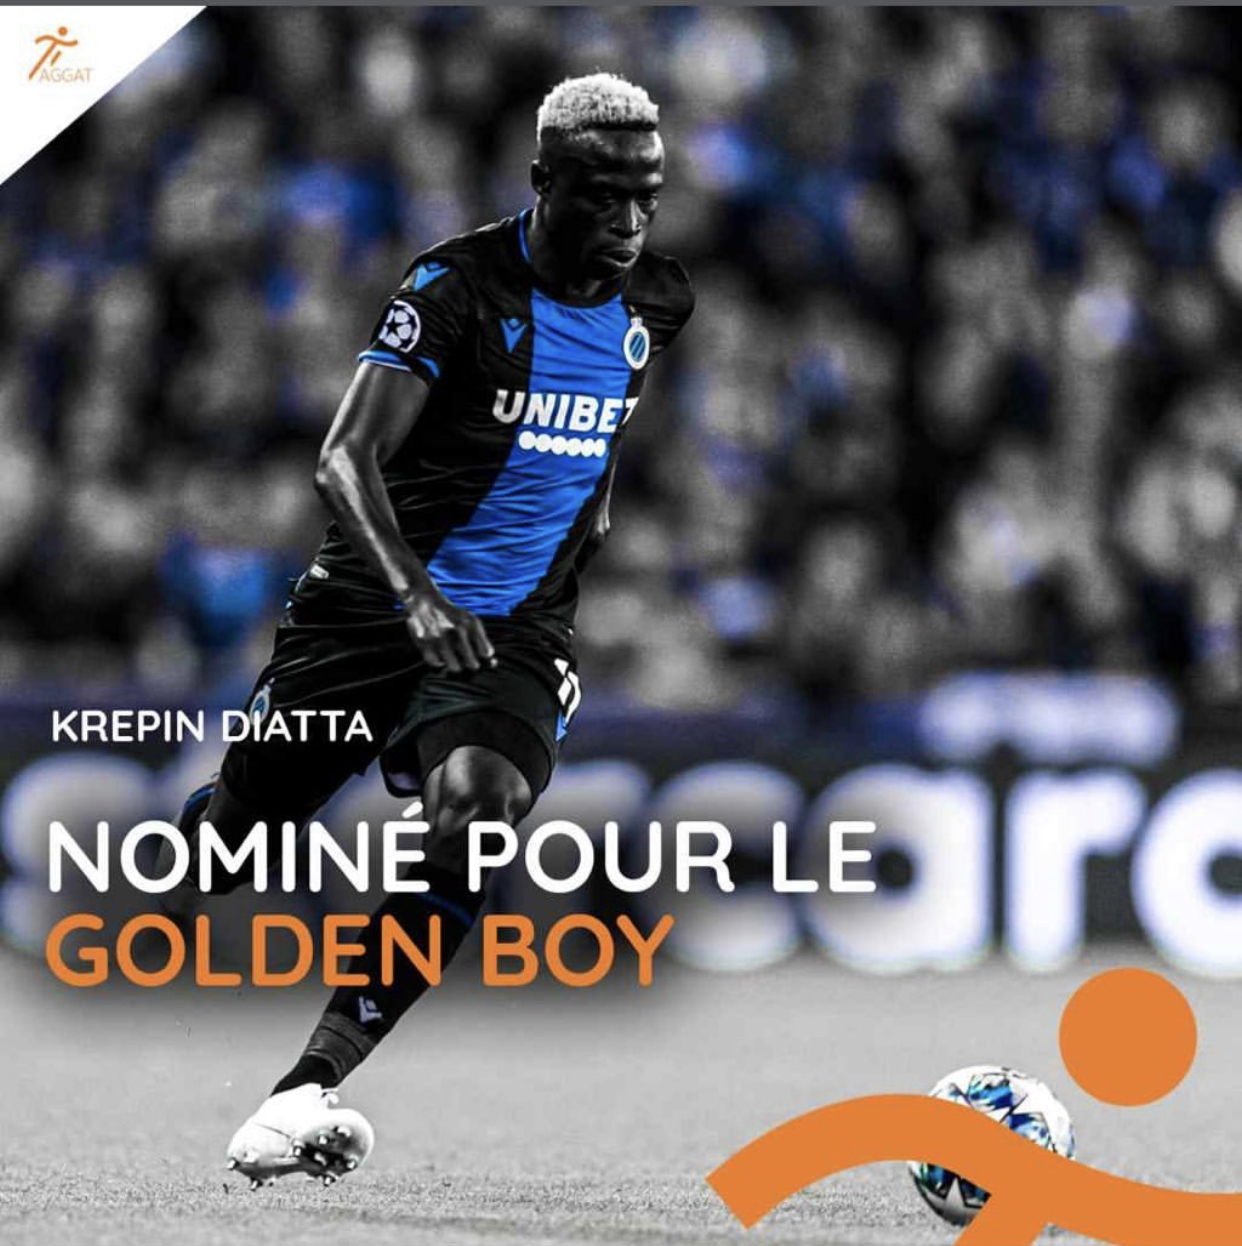 Golden Boy 2019 : Krépin Diatta parmi les nominés